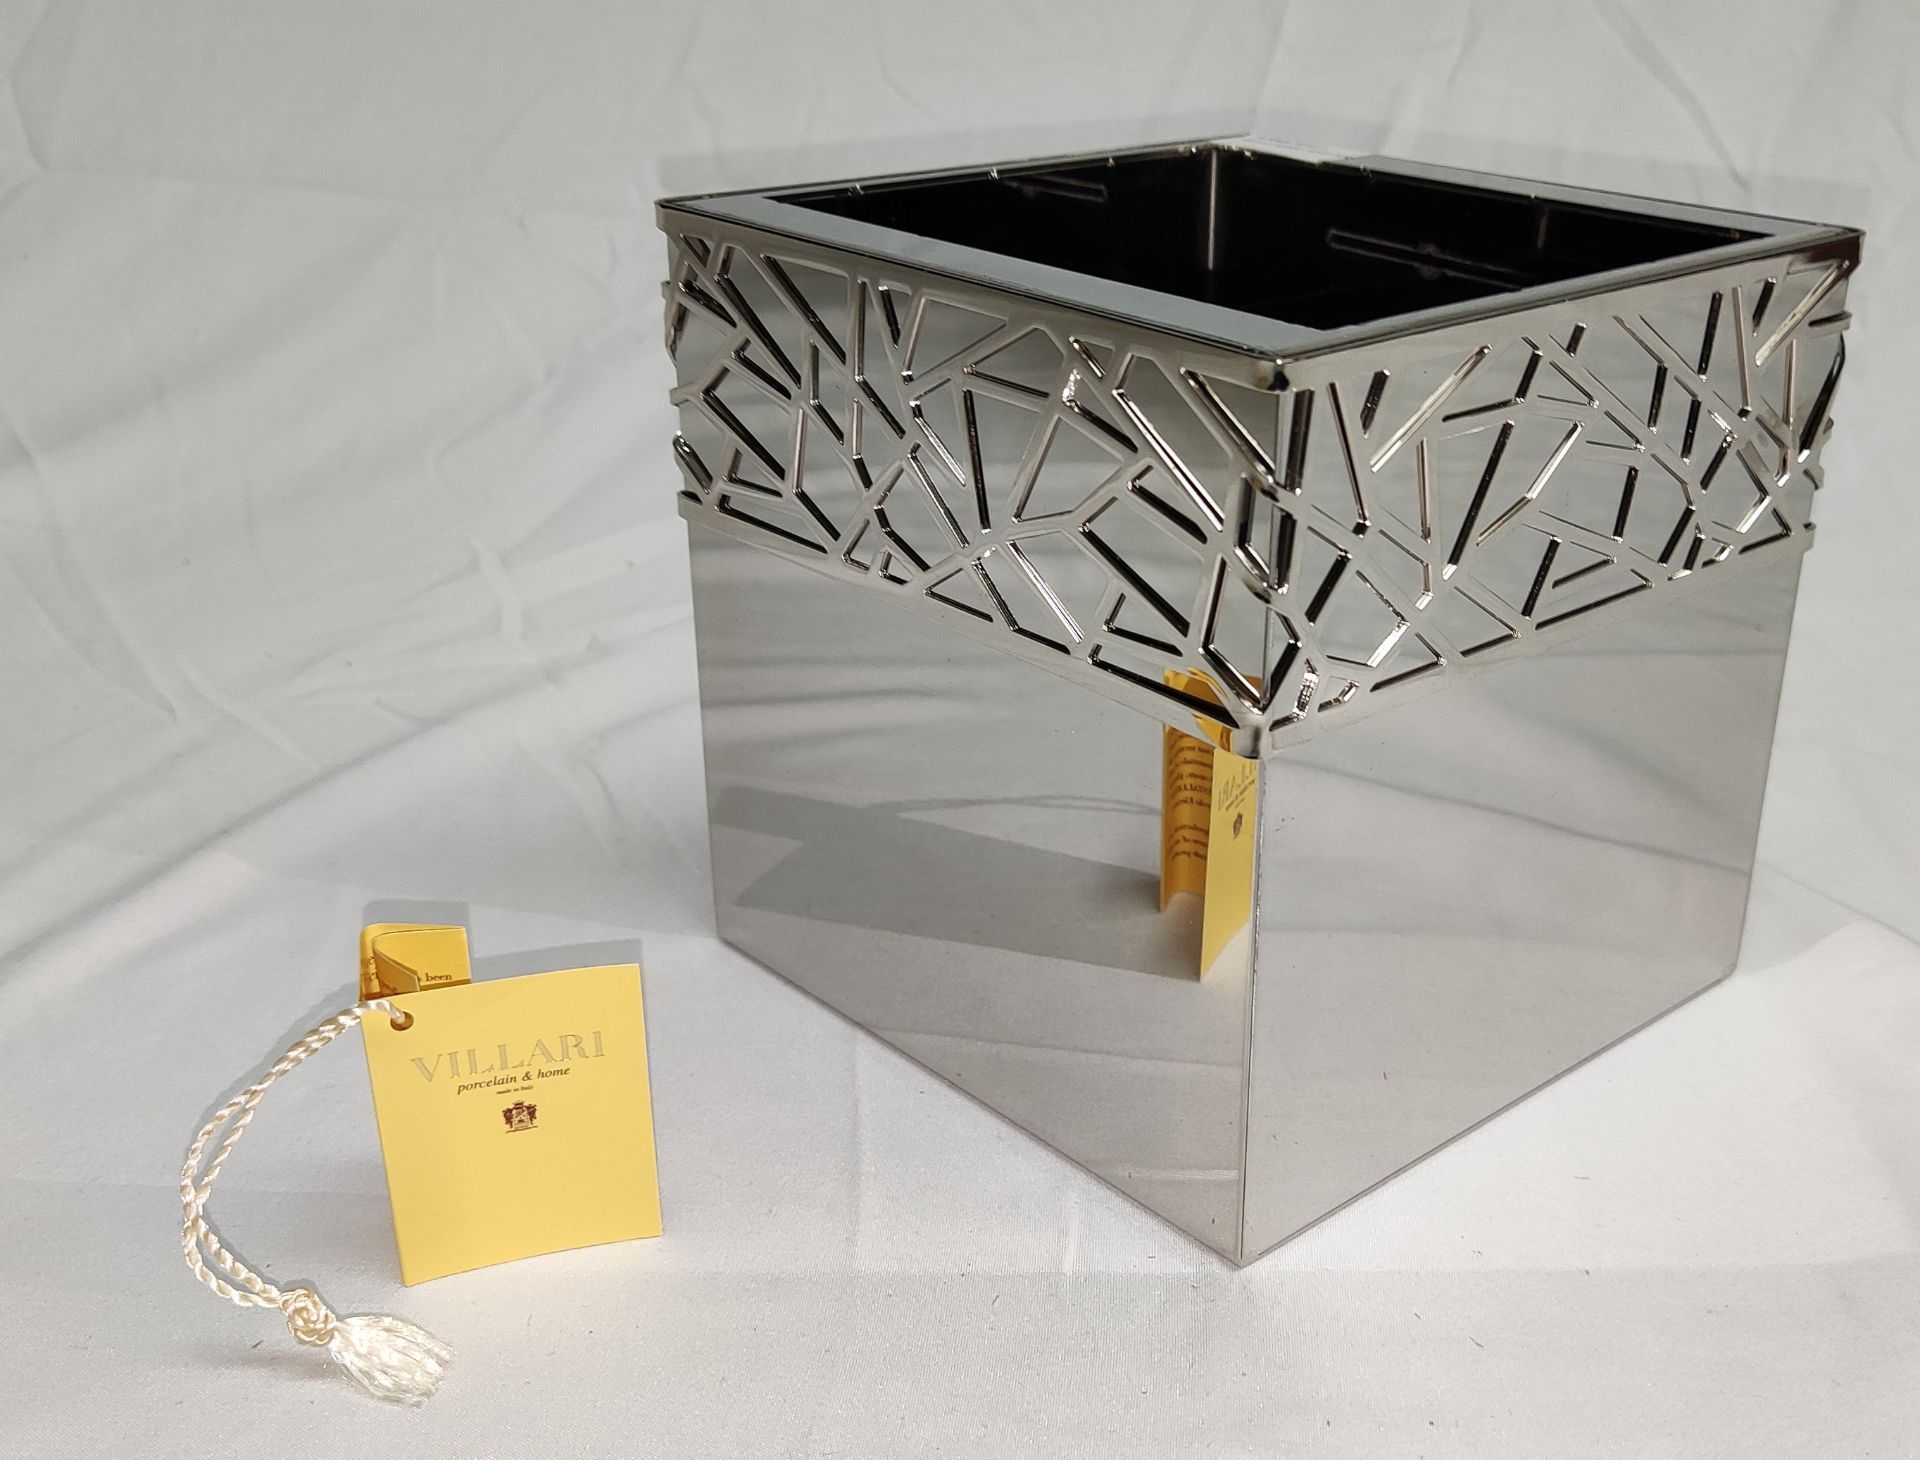 1 x VILLARI Hiroito Square Tissue Box - Chrome Plated - Boxed - Original RRP £529 - Ref: 6125321/ - Image 2 of 17